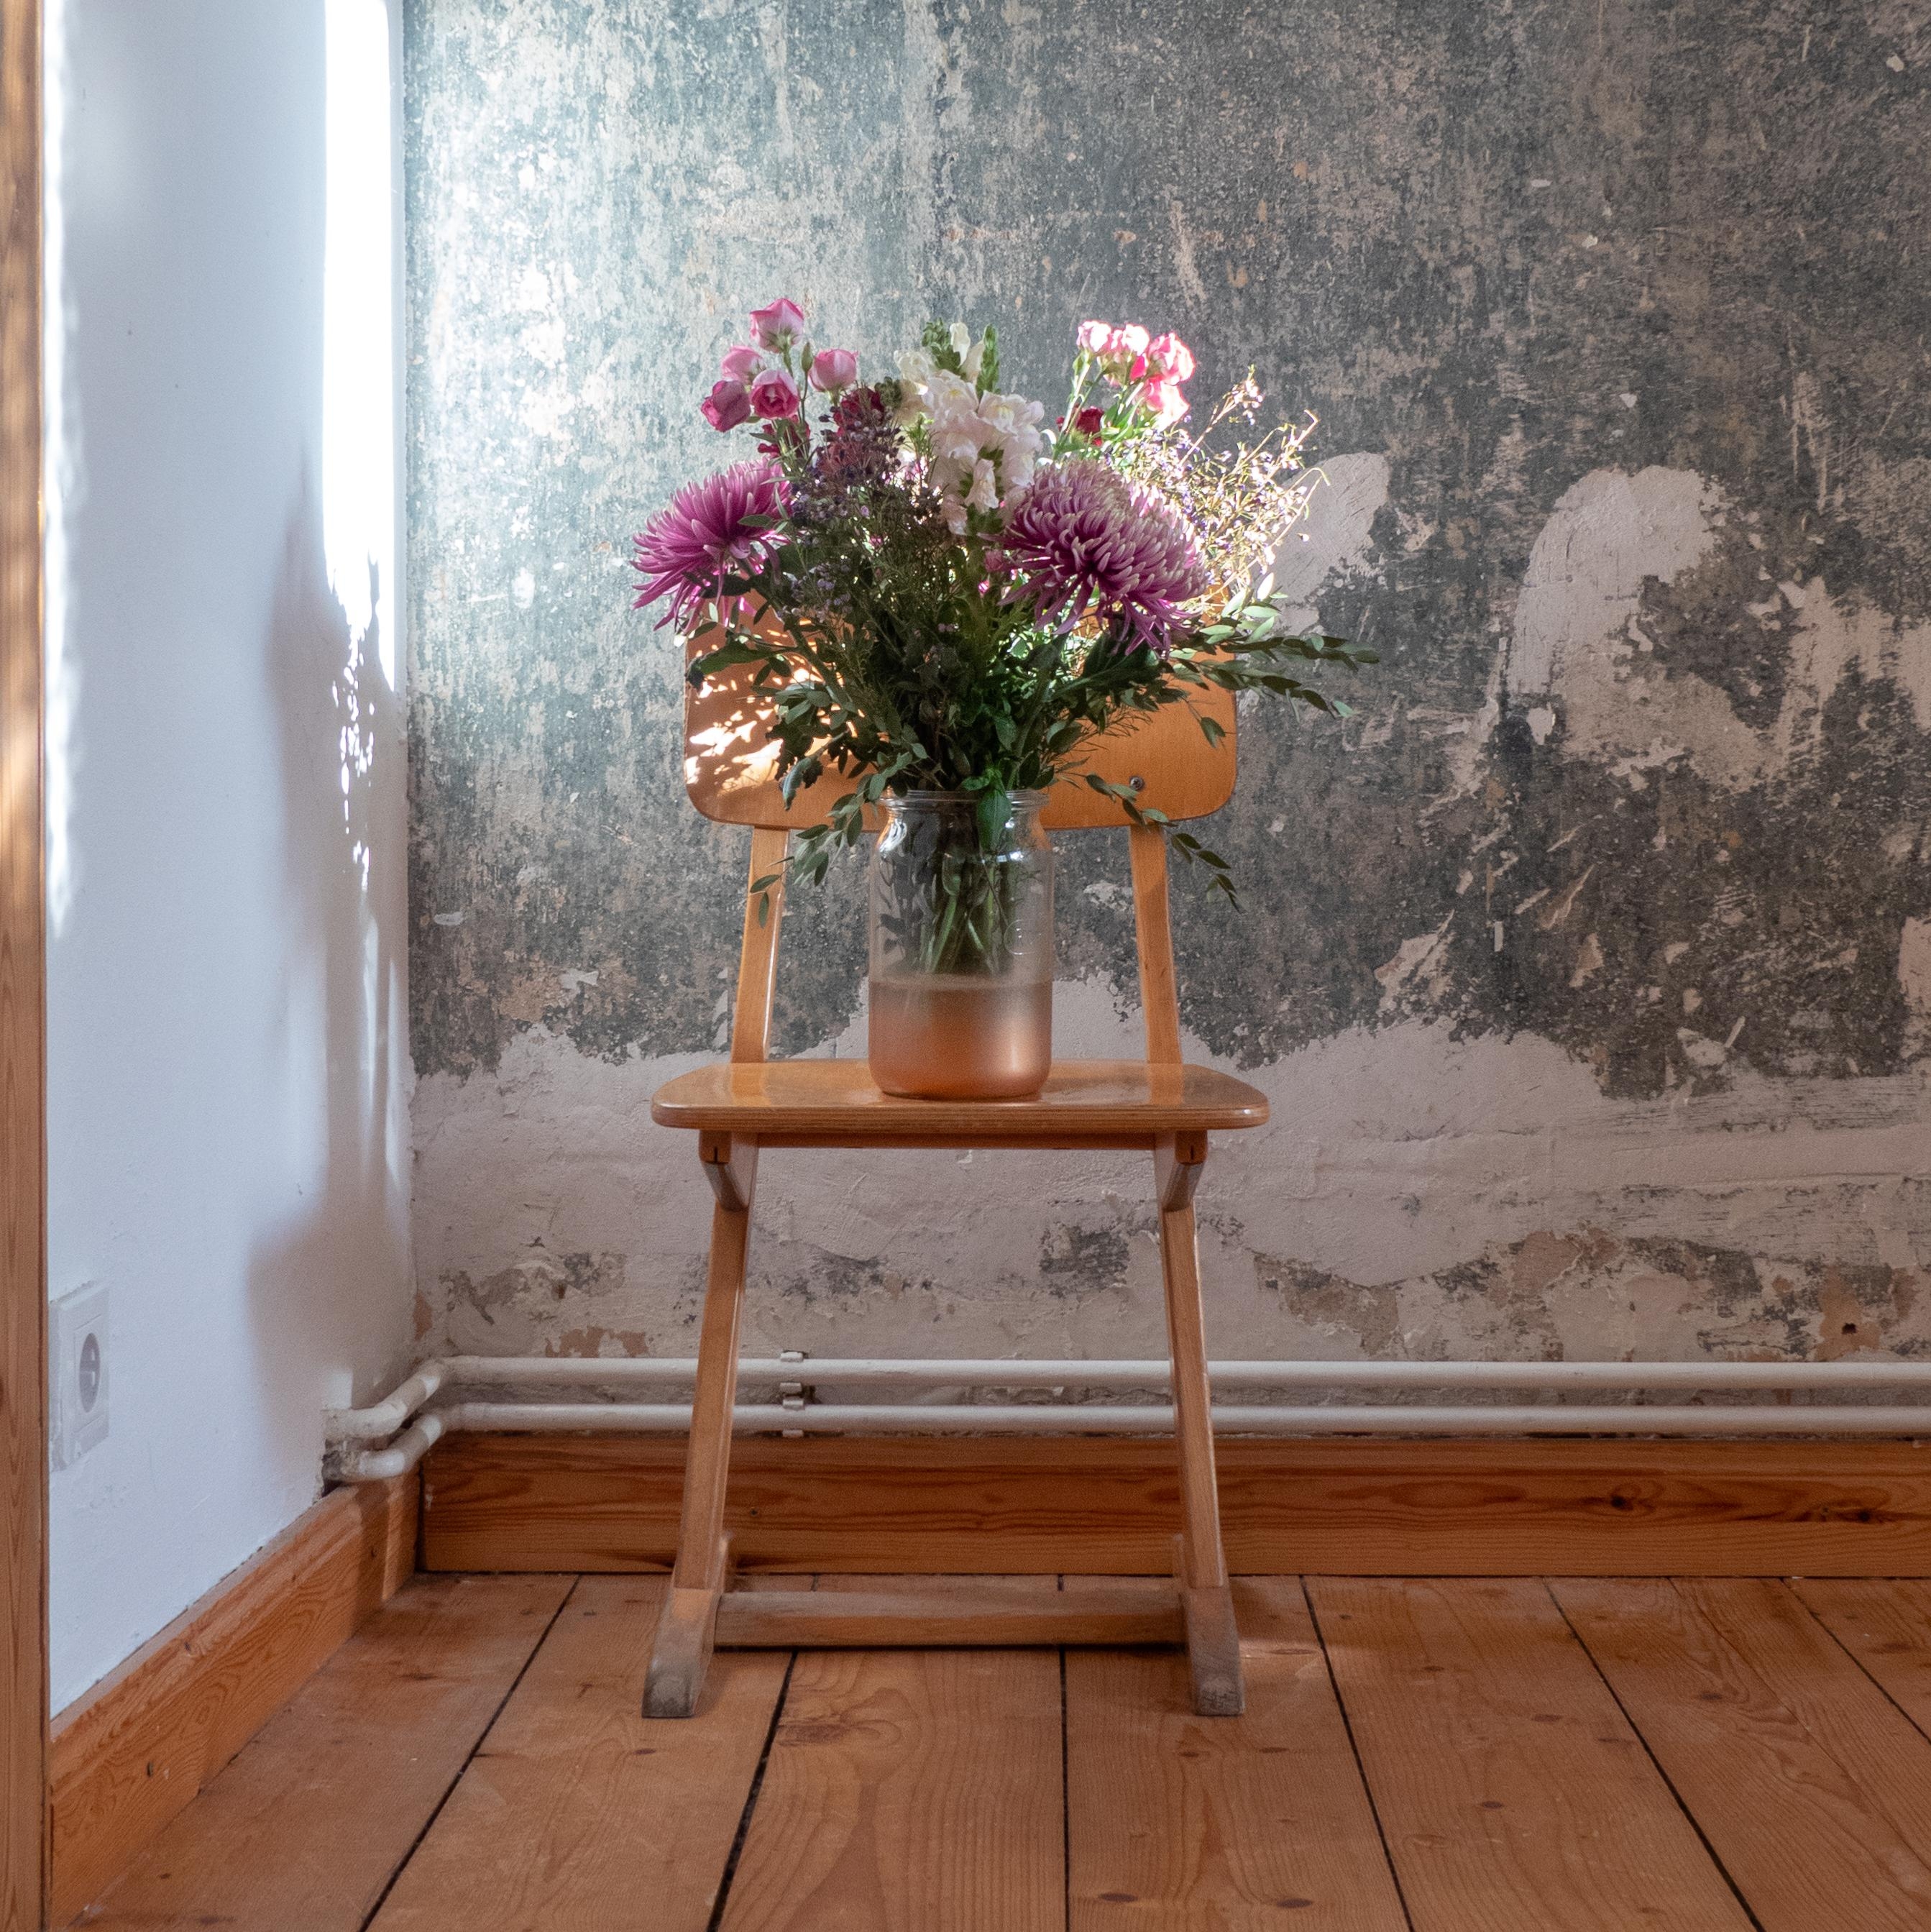 #detailverliebt #interior #flowers #altbau #vintage #esszimmer 